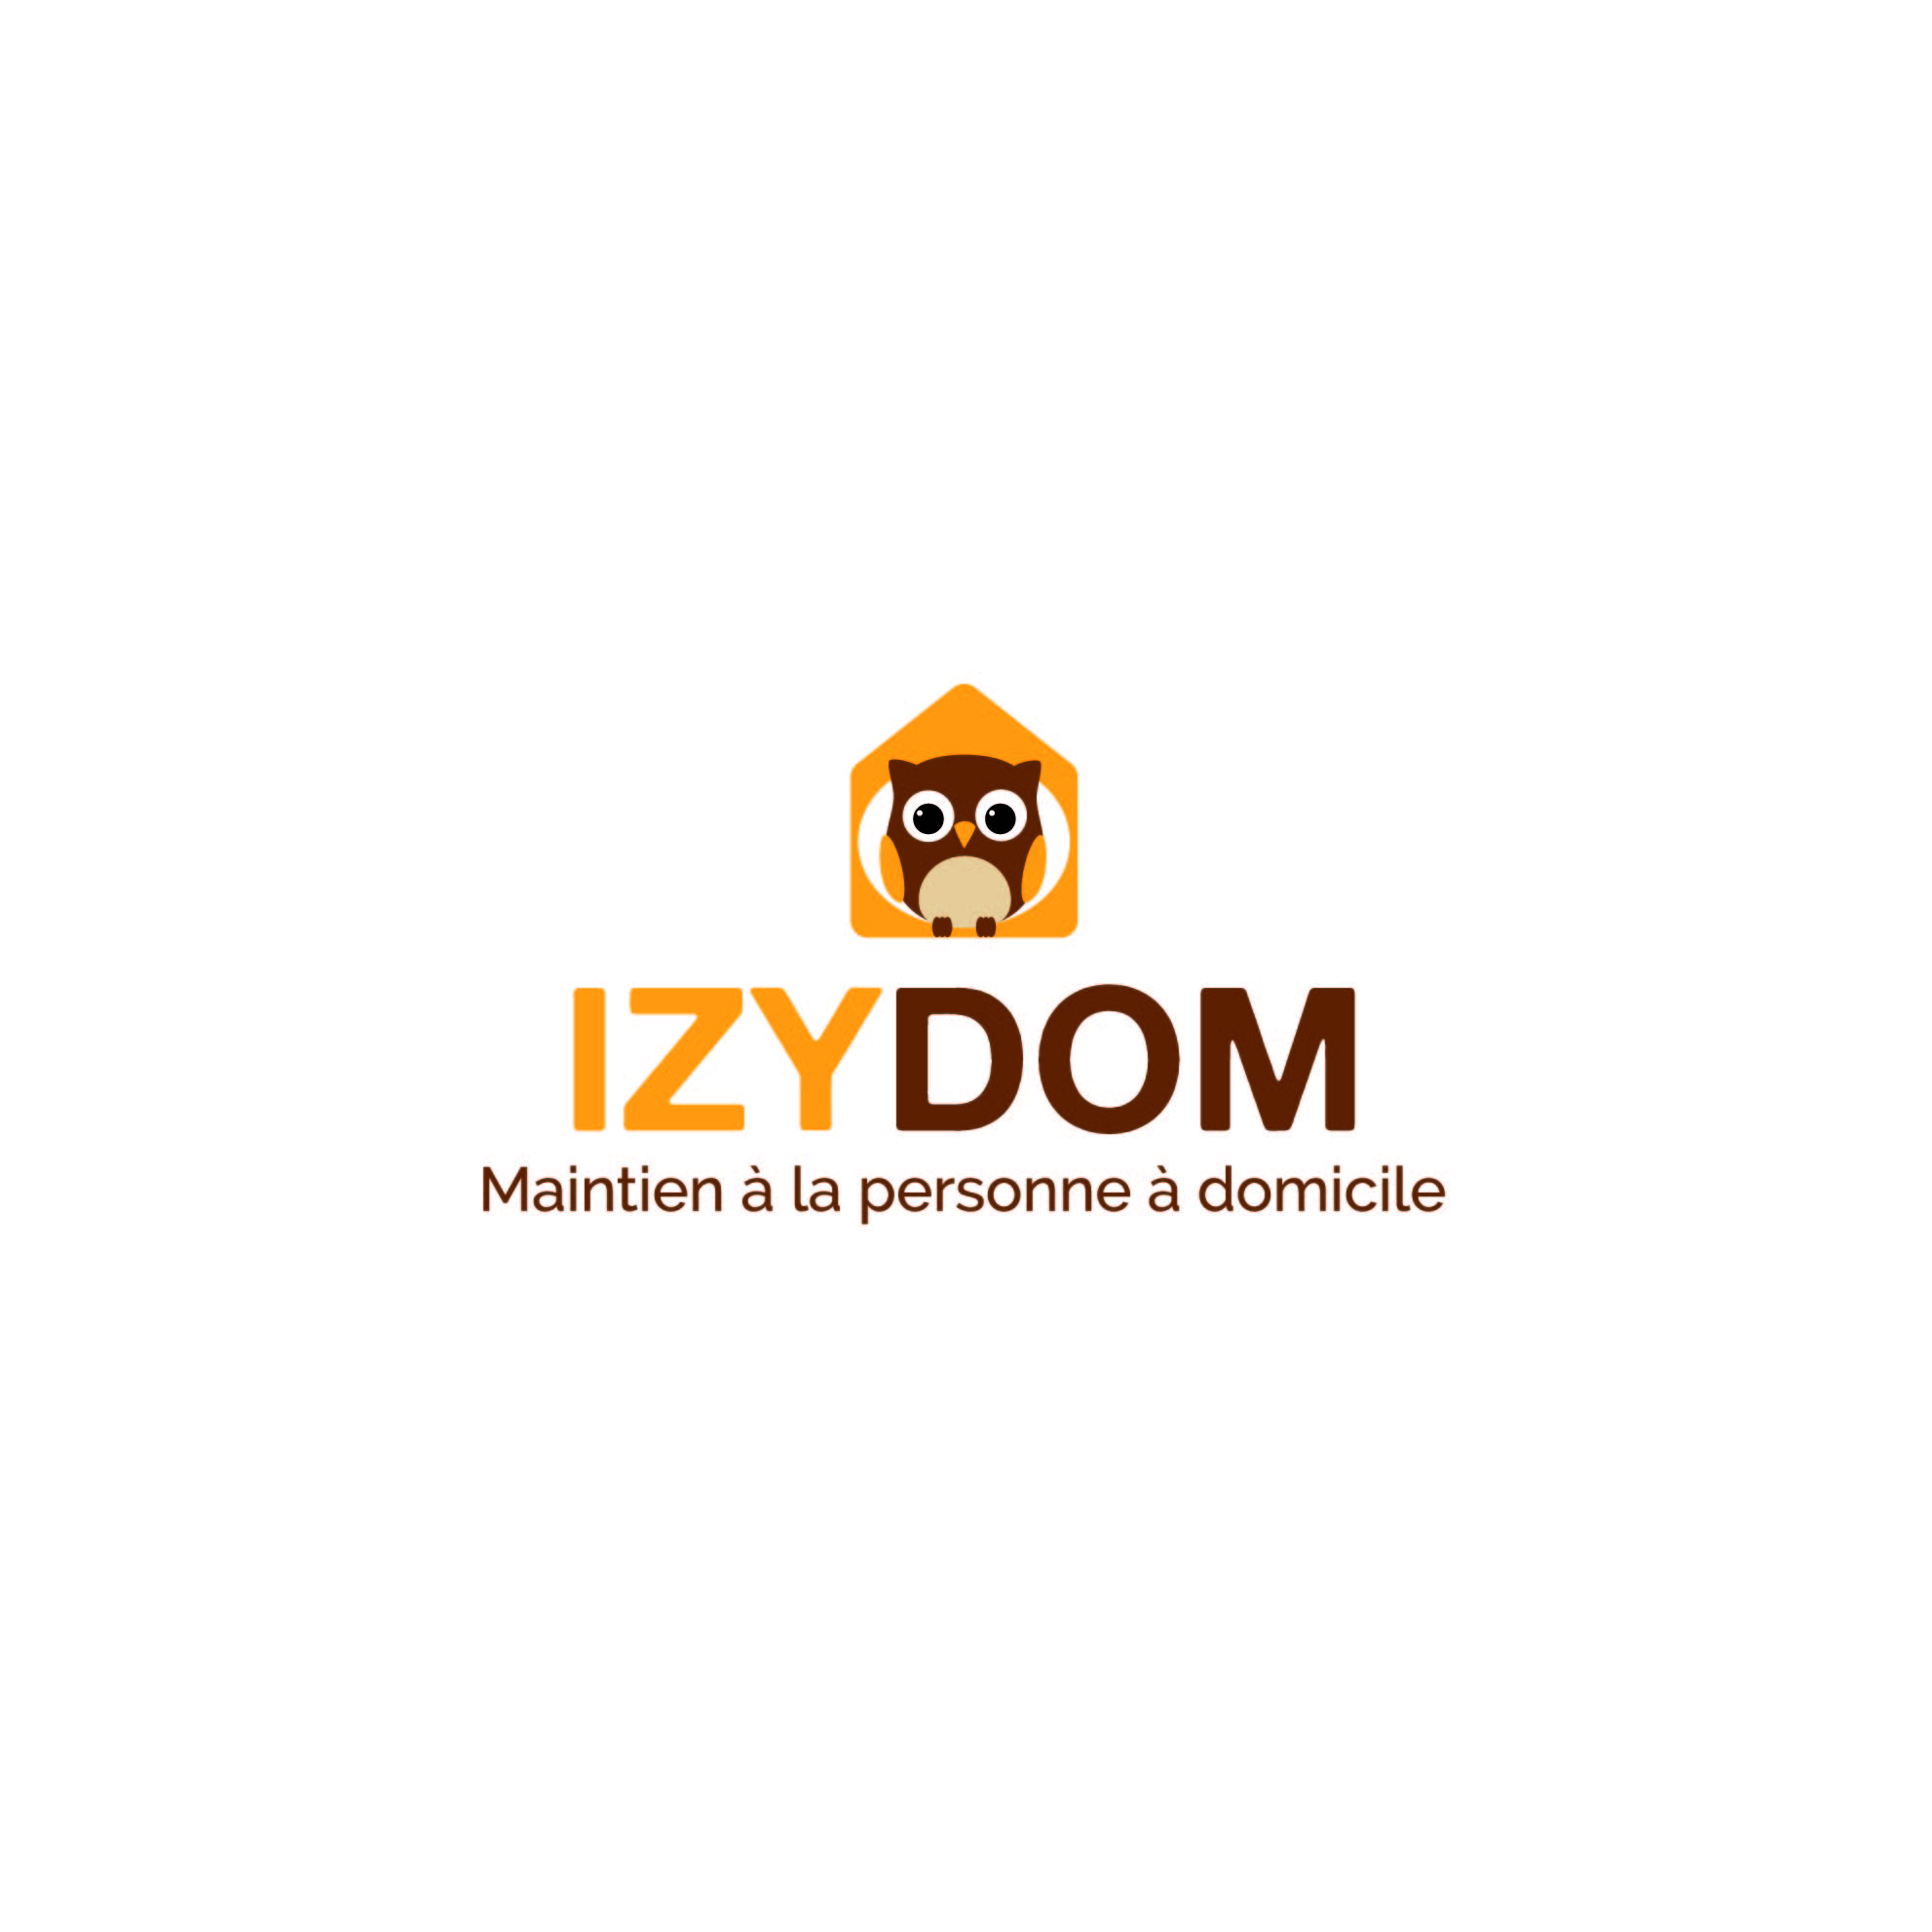 Société de service de maintien à domicile pour handicapé en fauteuil roulant sur Marseille: Izydom, votre solution